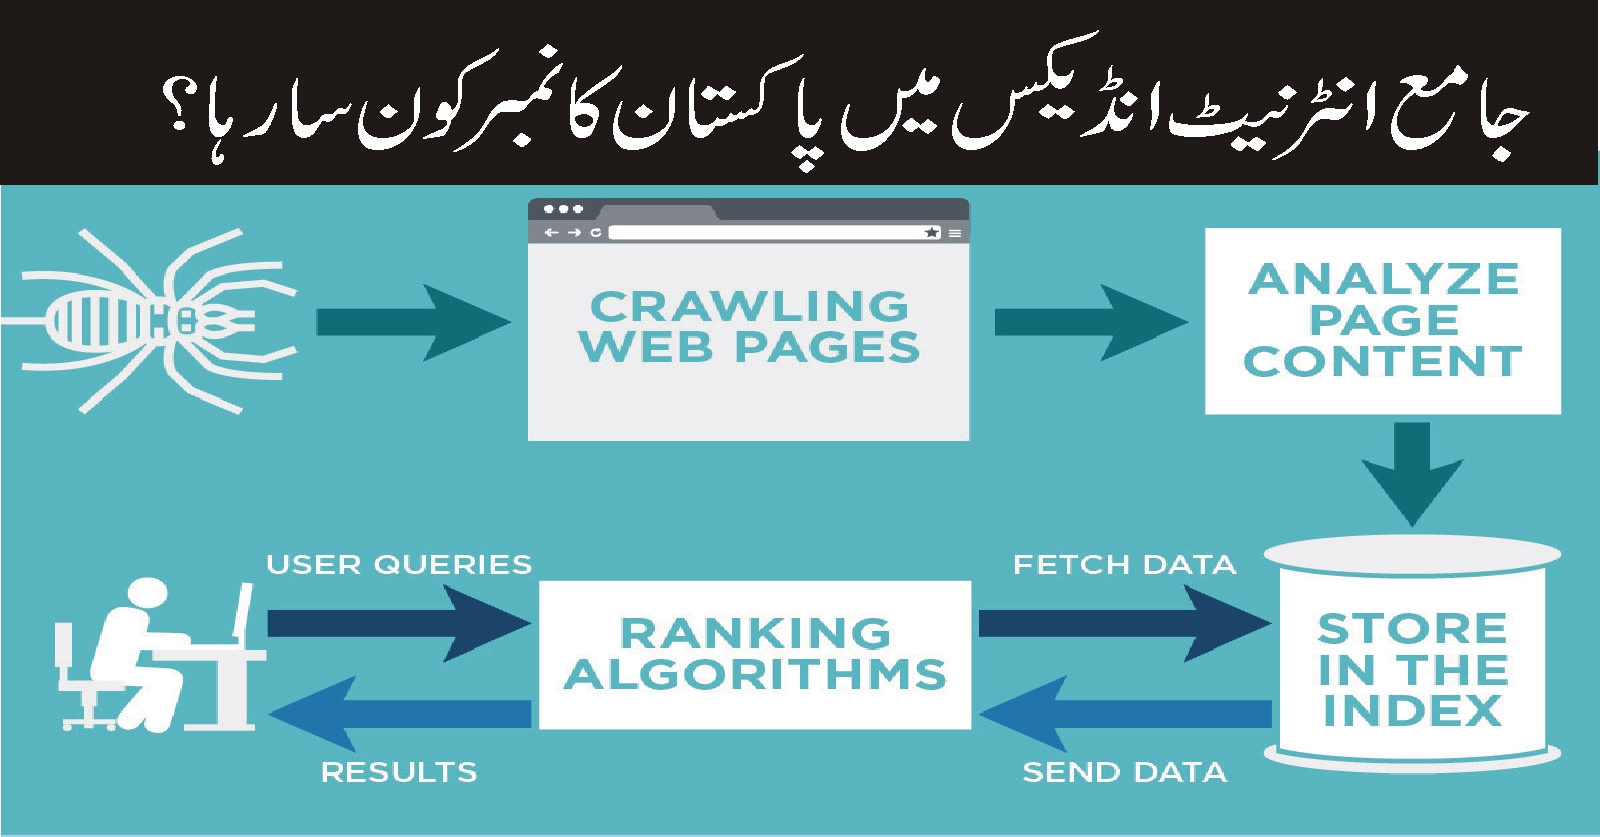 جامع انٹرنیٹ انڈیکس میں پاکستان کا نمبرکون سا رہا؟